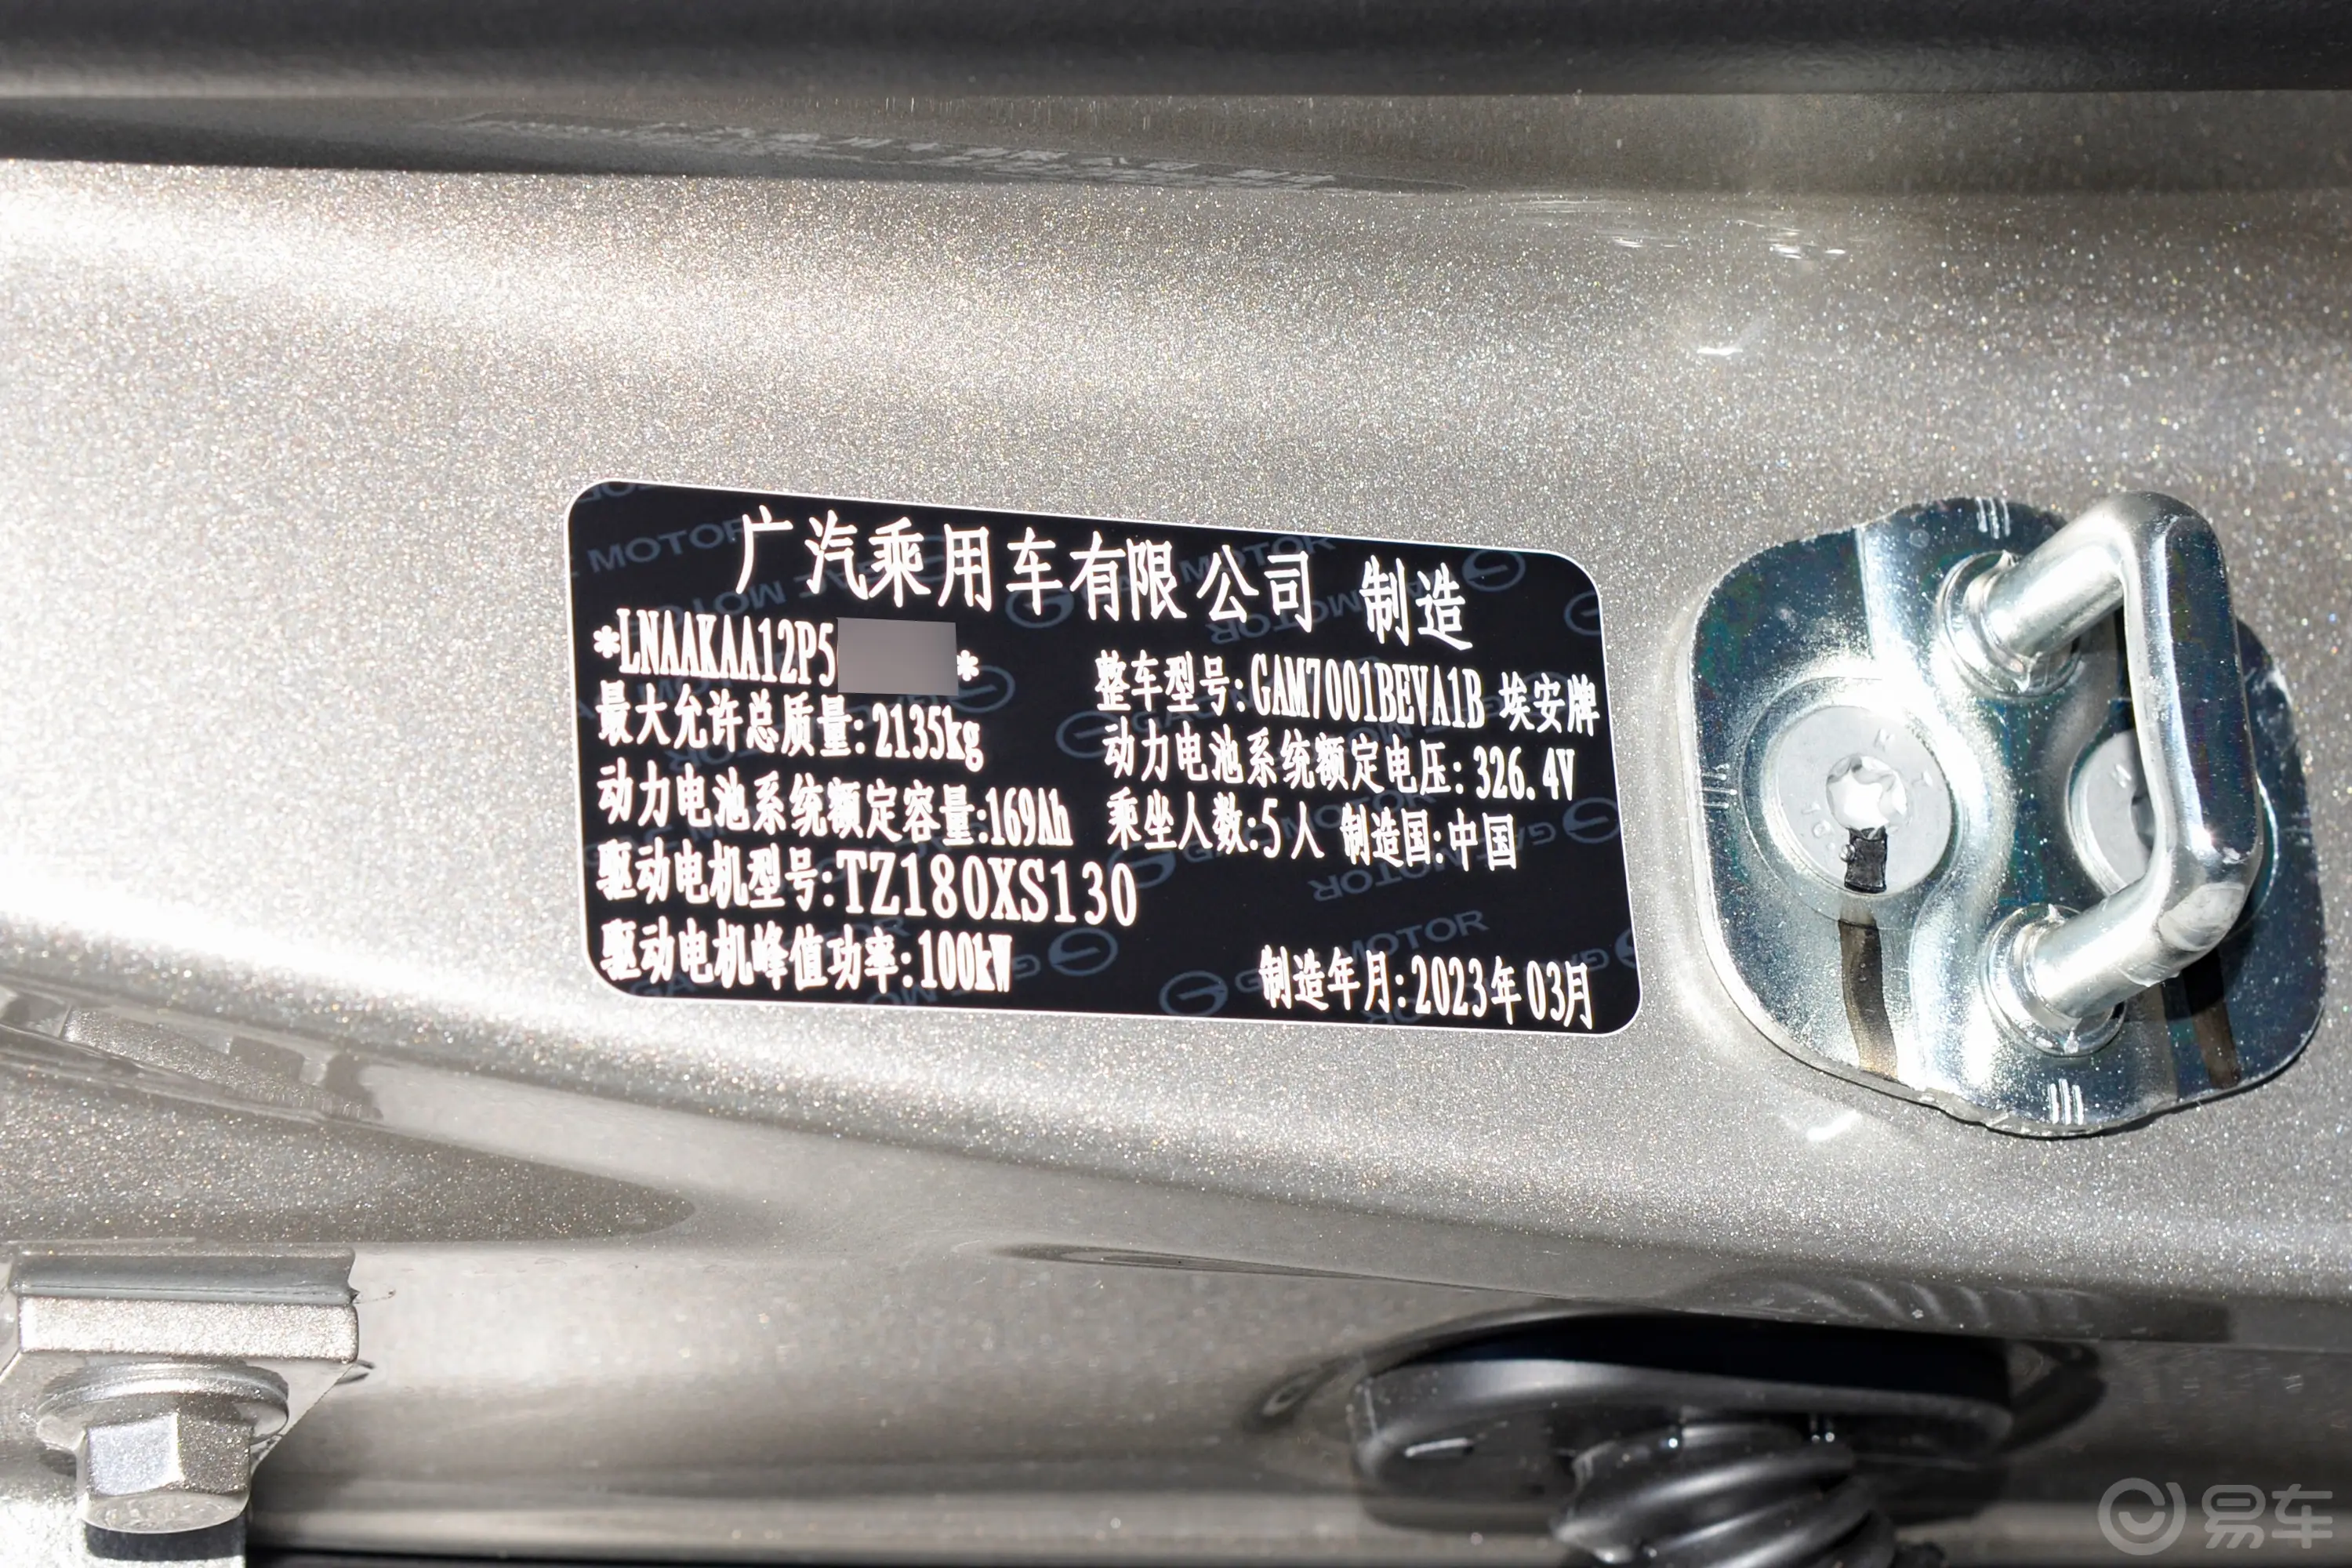 AION S480km 魅580 55.2kWh车辆信息铭牌